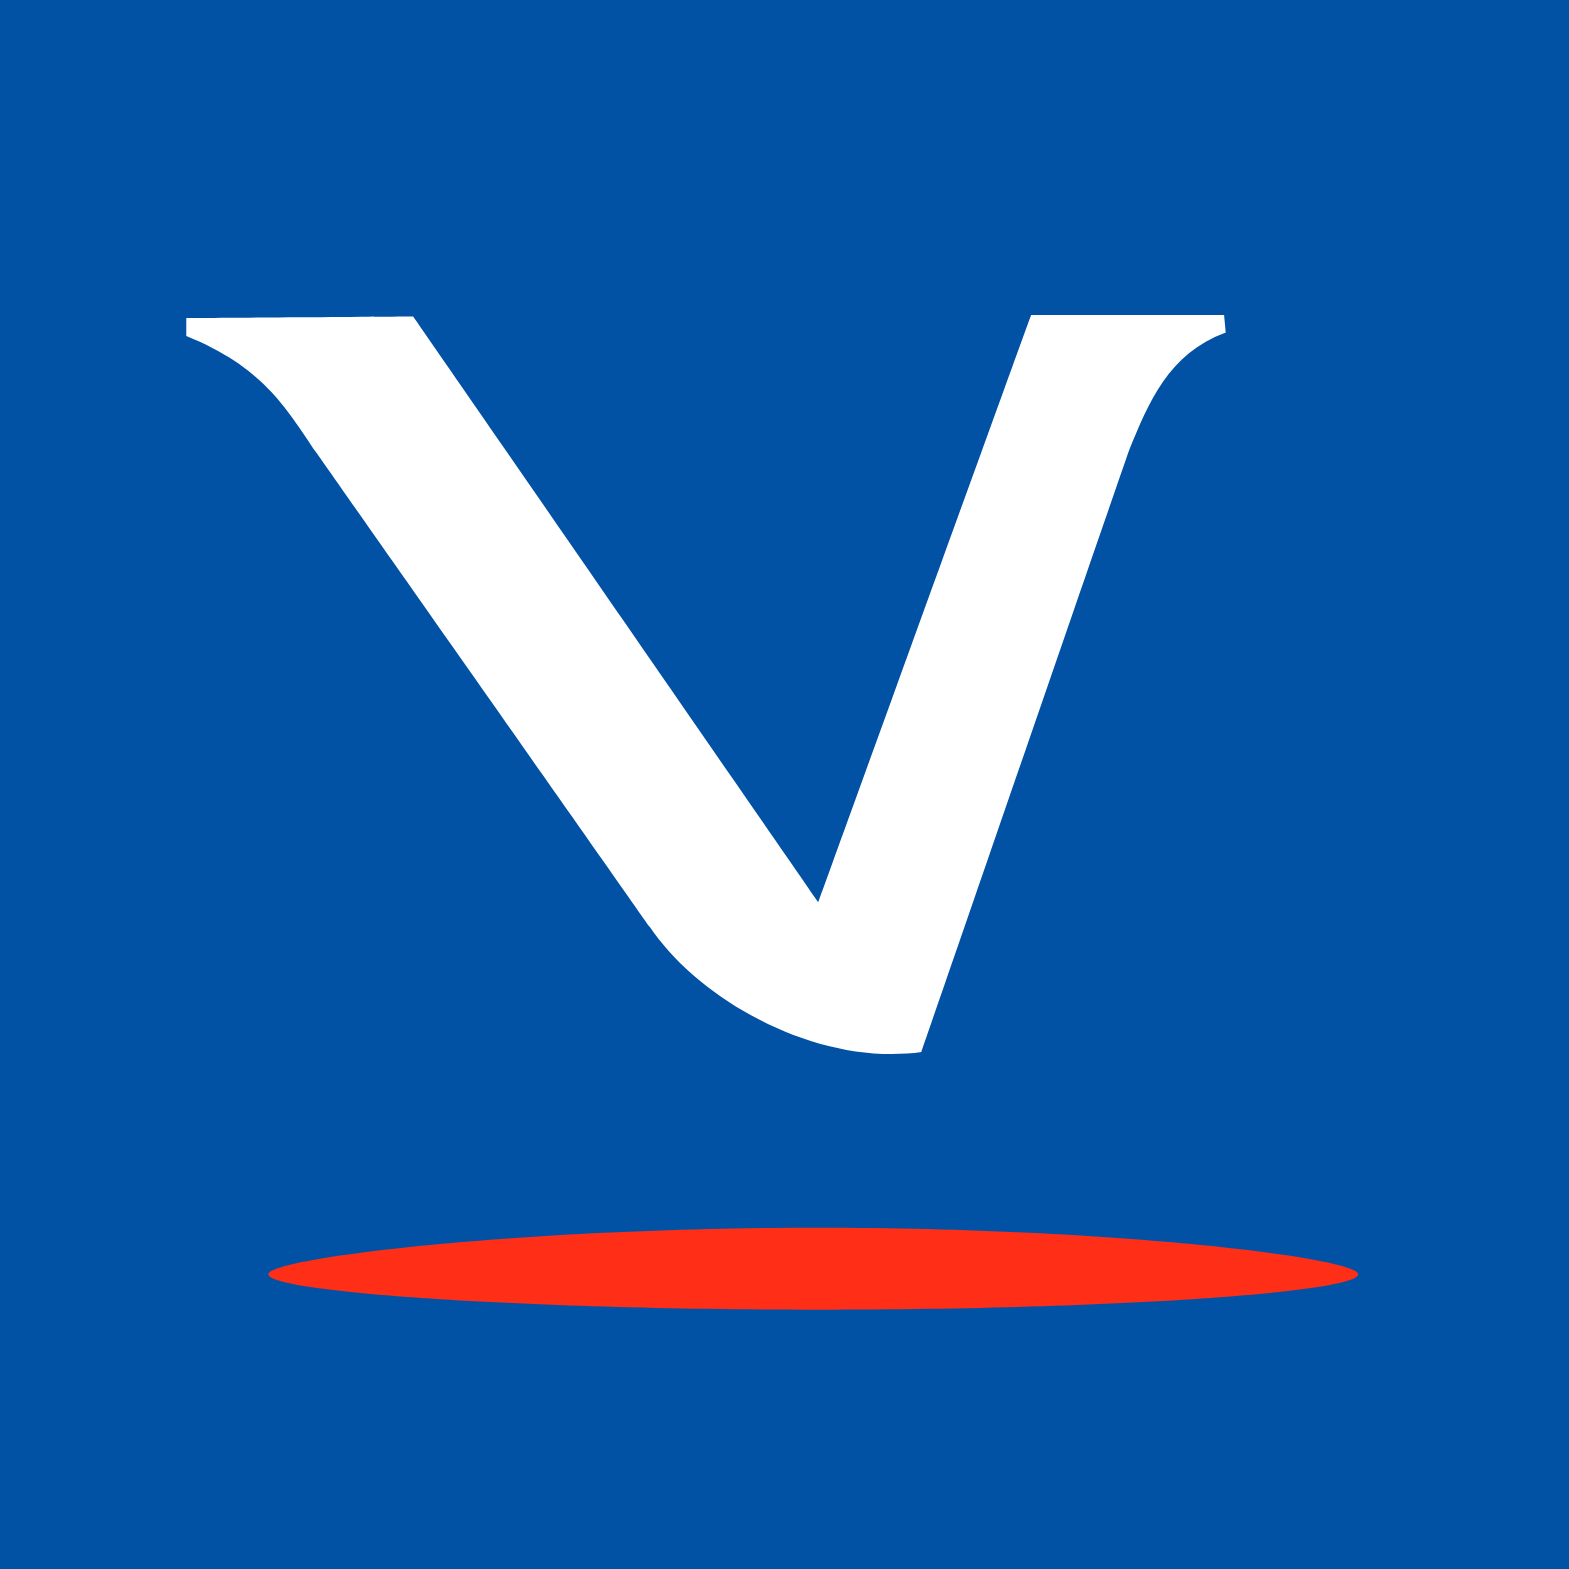 Virbac SA logo (transparent PNG)